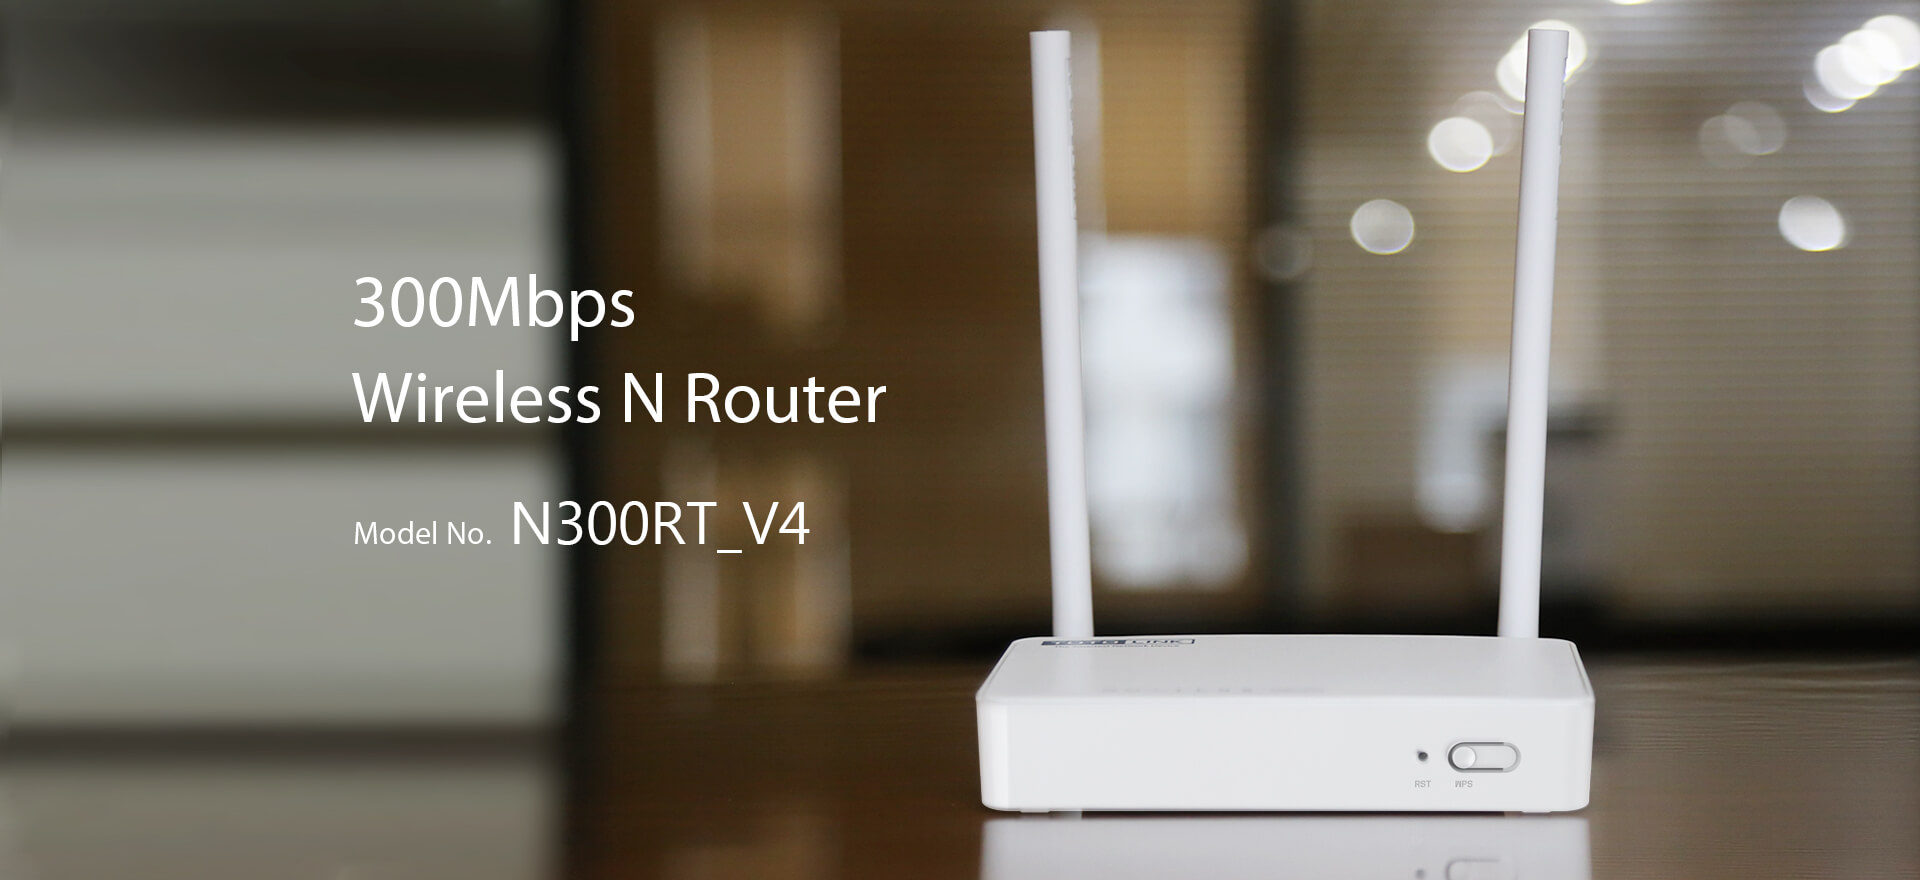 N300RT-V4 300Mbps Wireless N Router Dubai